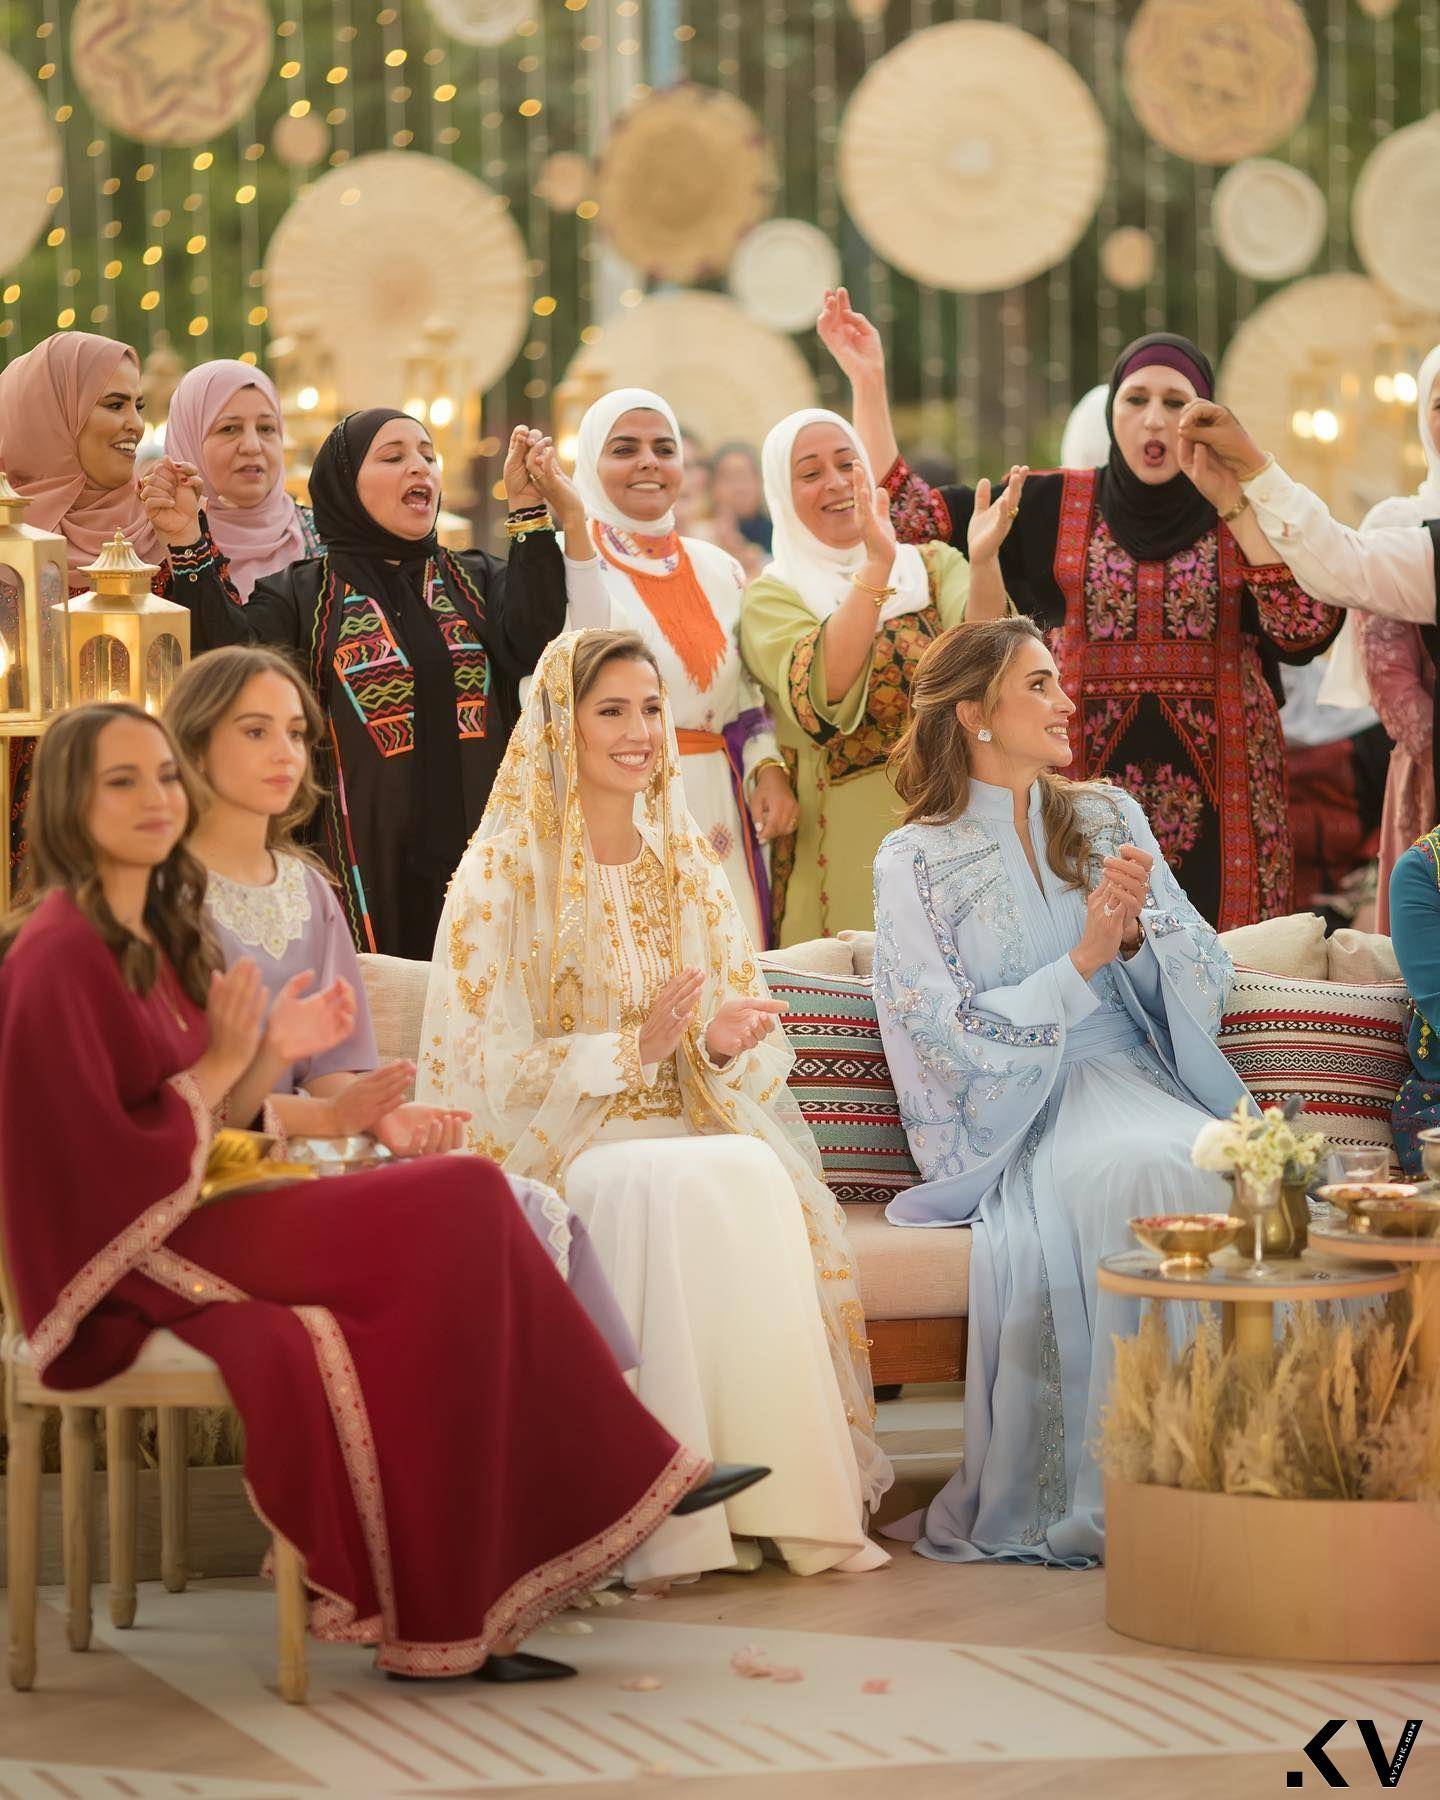 沙乌地阿拉伯千金将成约旦“最美王妃”　婚前派对礼服绣两国元素 名人名流 图1张